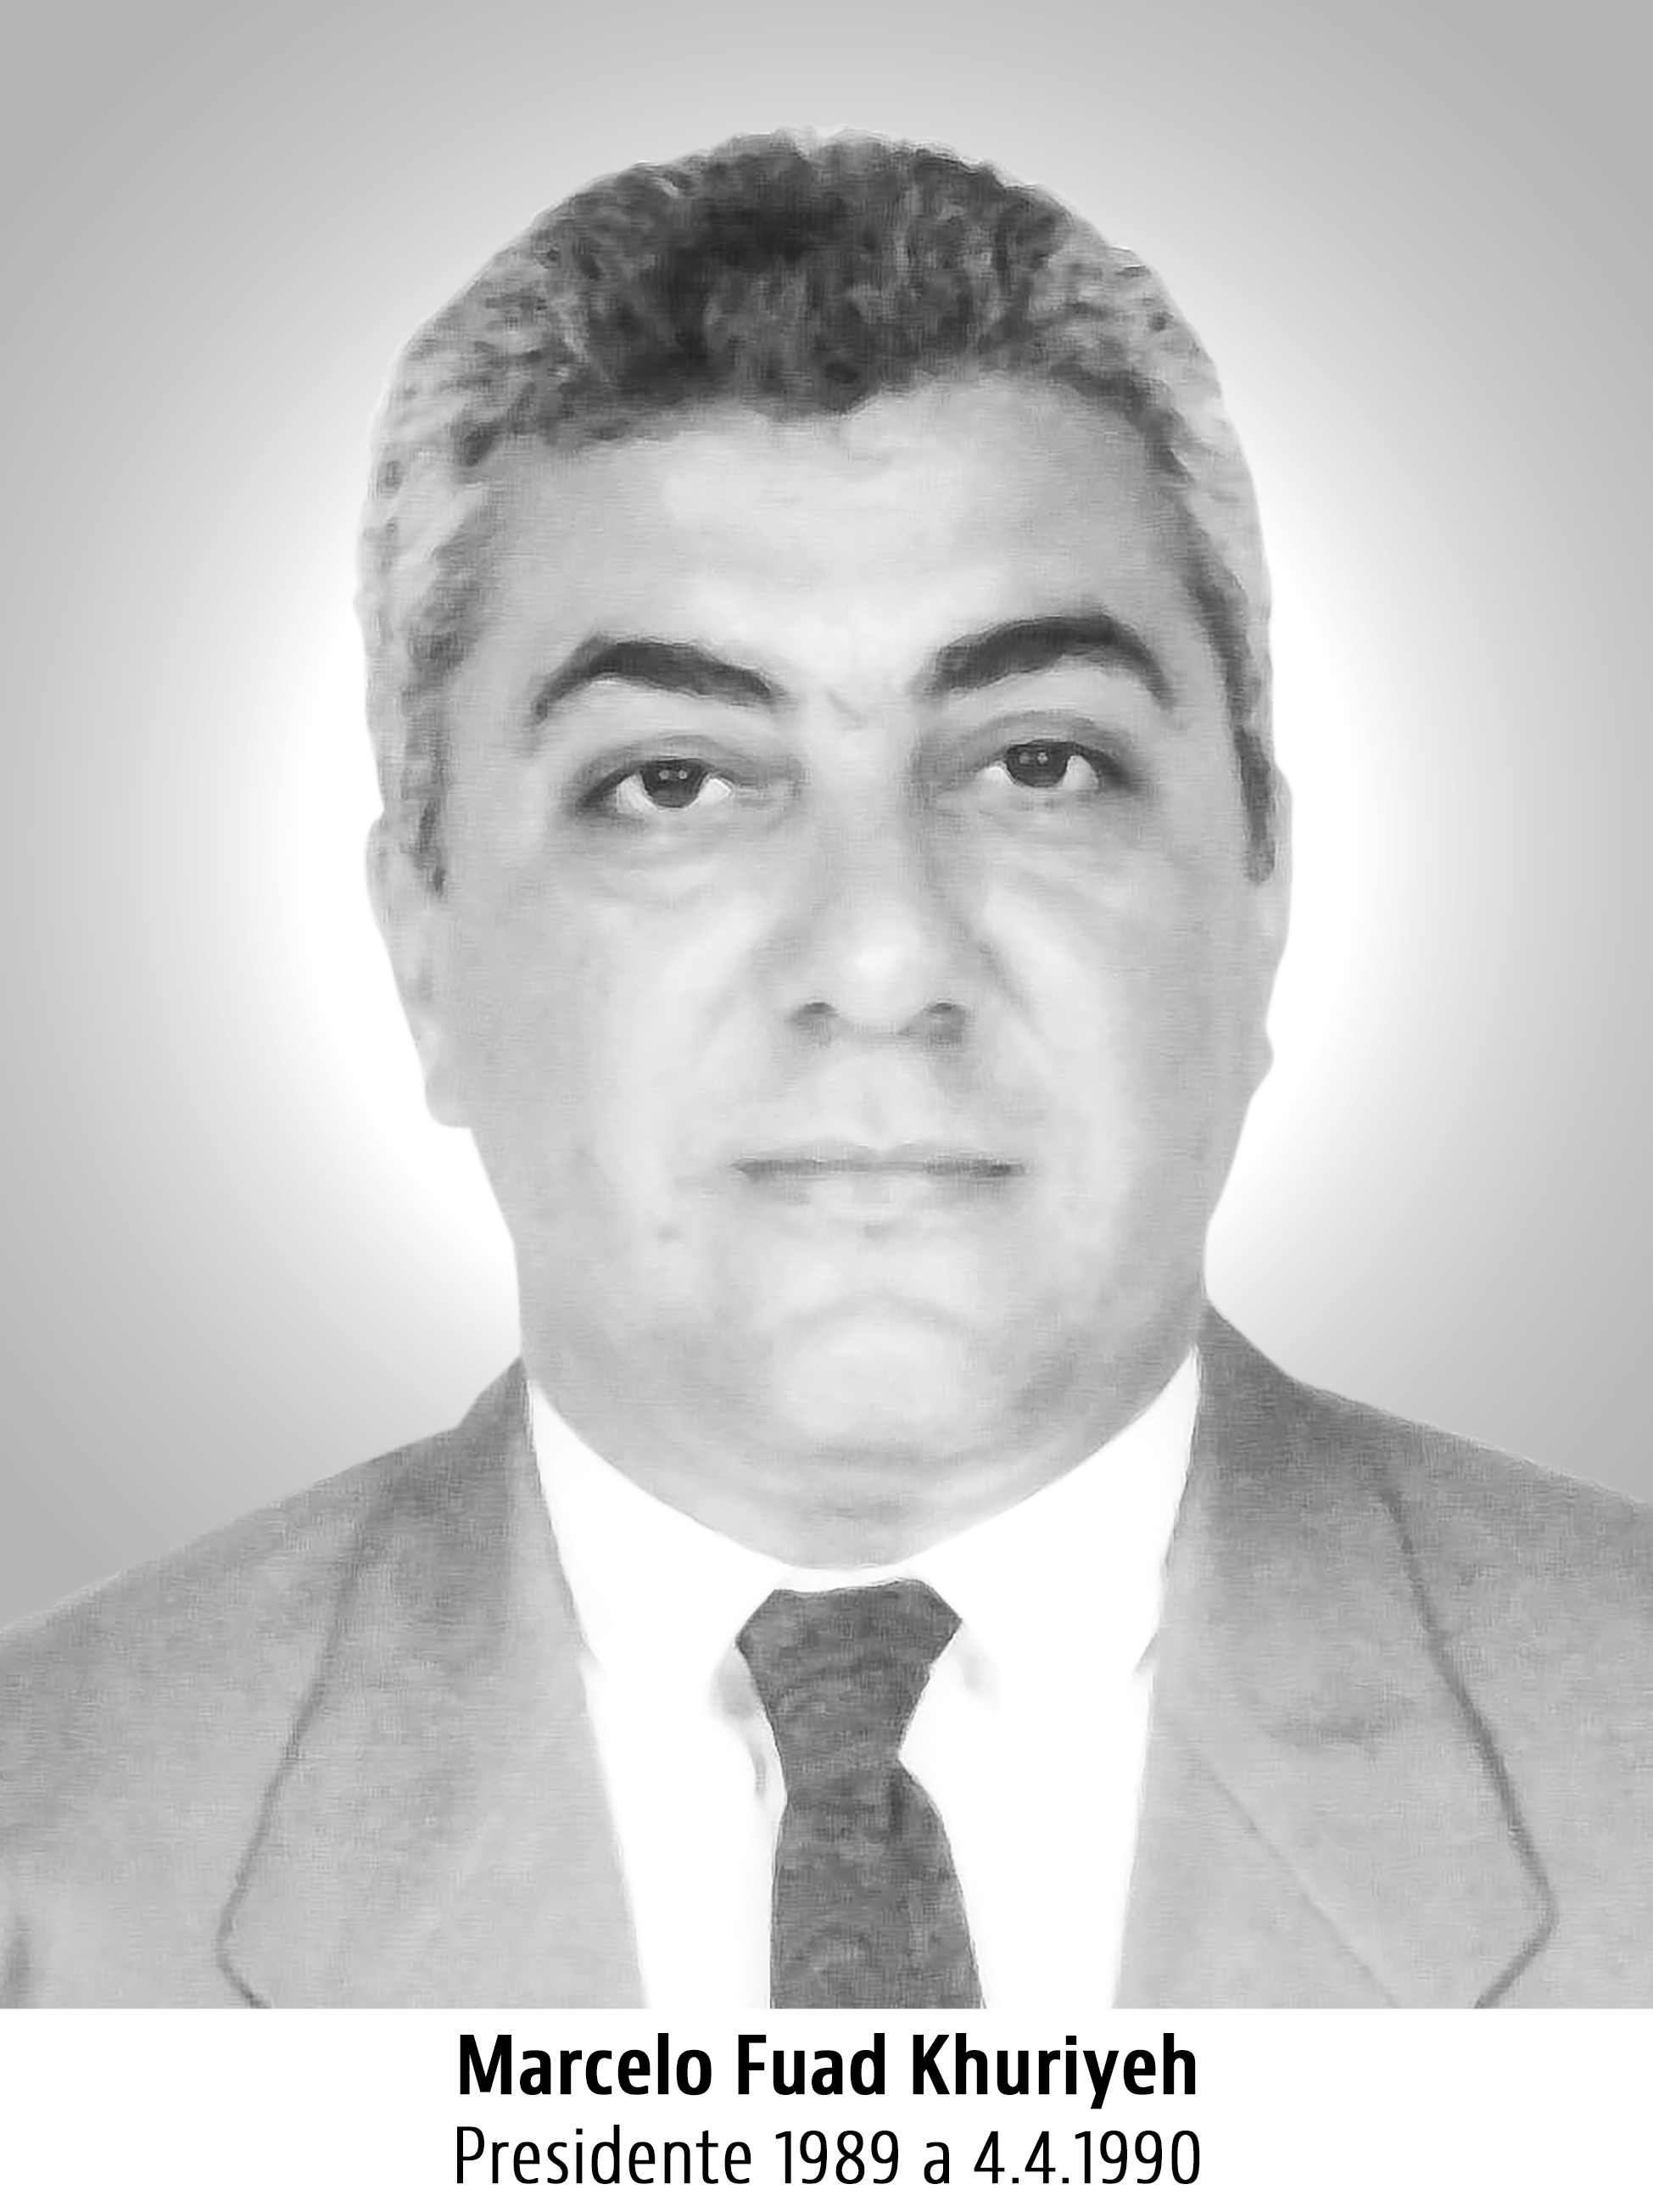 Marcelo Fuad Khuriyeh